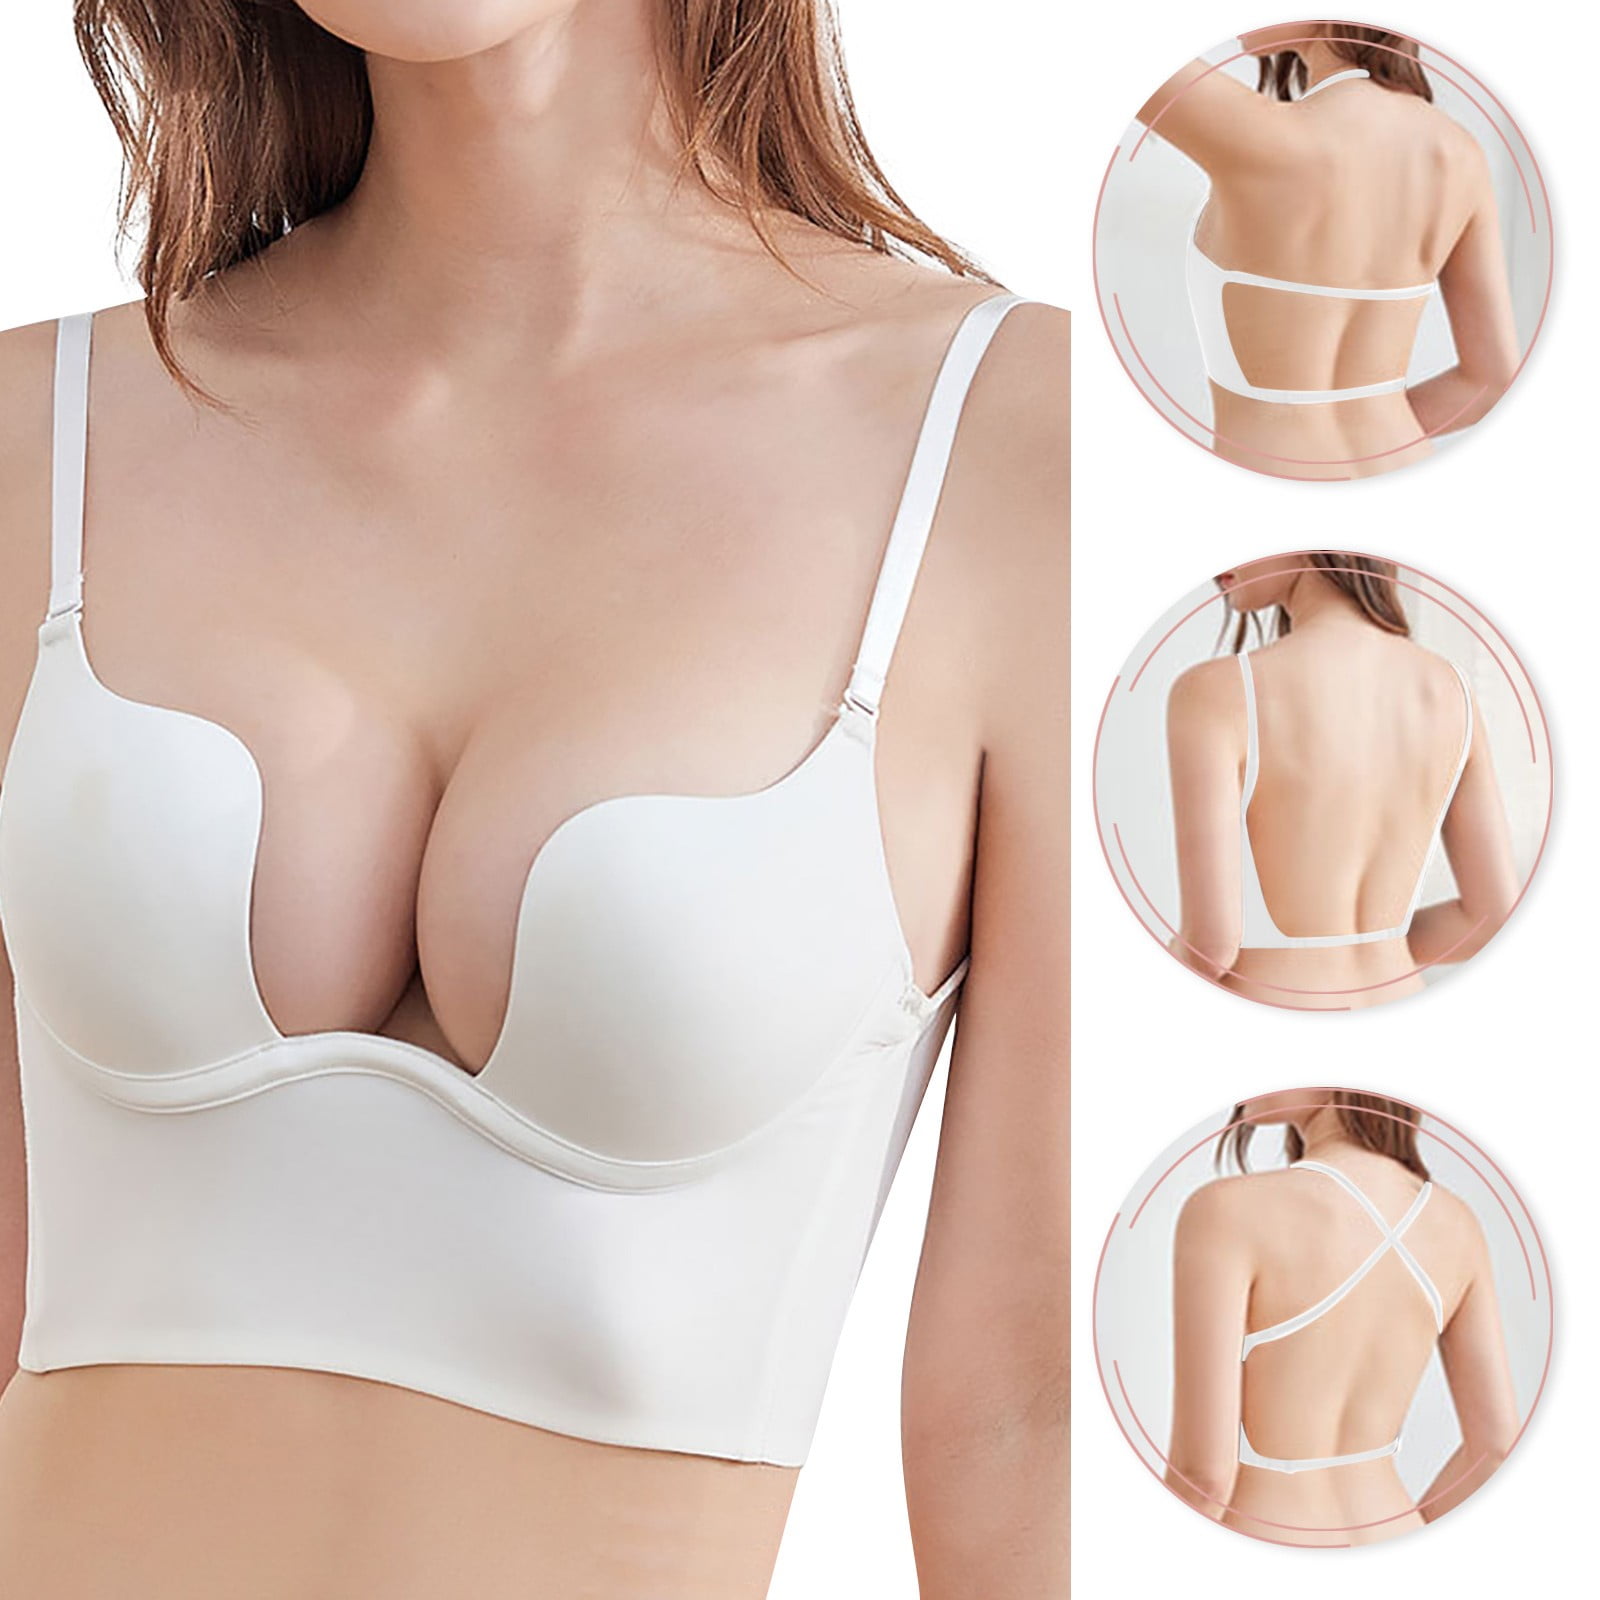 eczipvz Plus Size Lingerie Low Cut Bra Women Underwear Bralette Crop Top  Female Bra Push Up Brassiere Bra ,36D